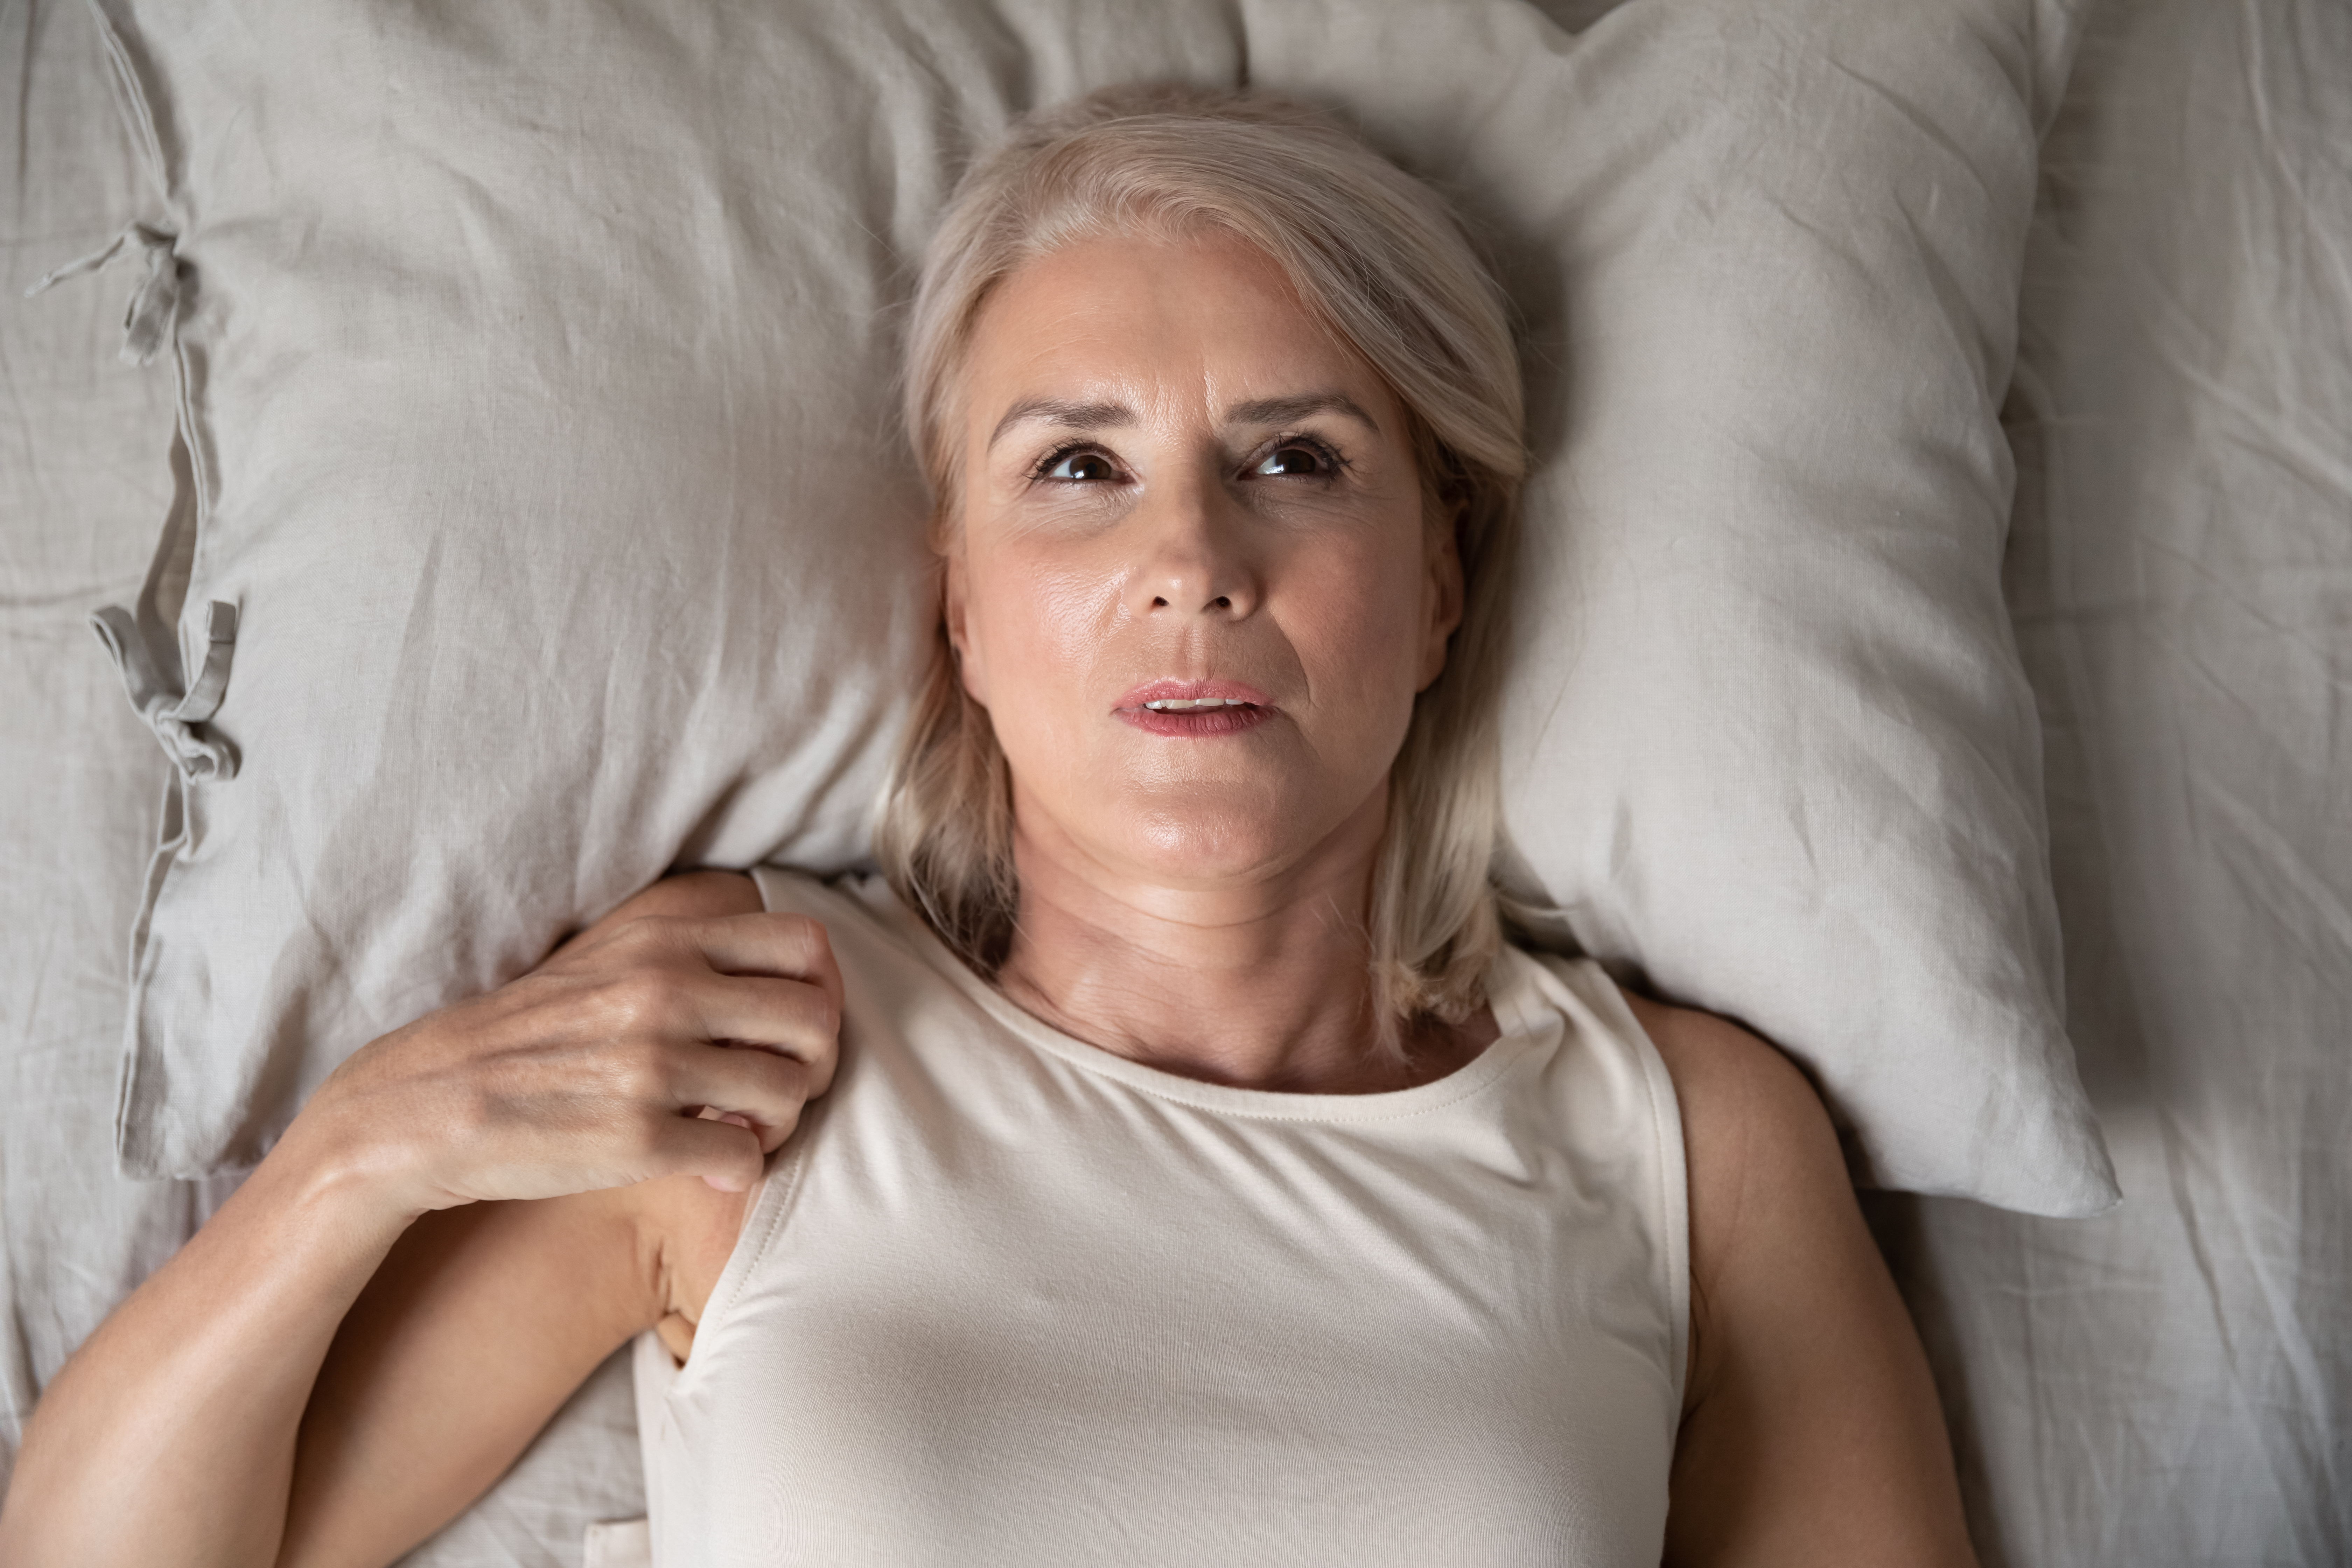 Une femme couchée dans son lit et éveillée | Source : Shutterstock